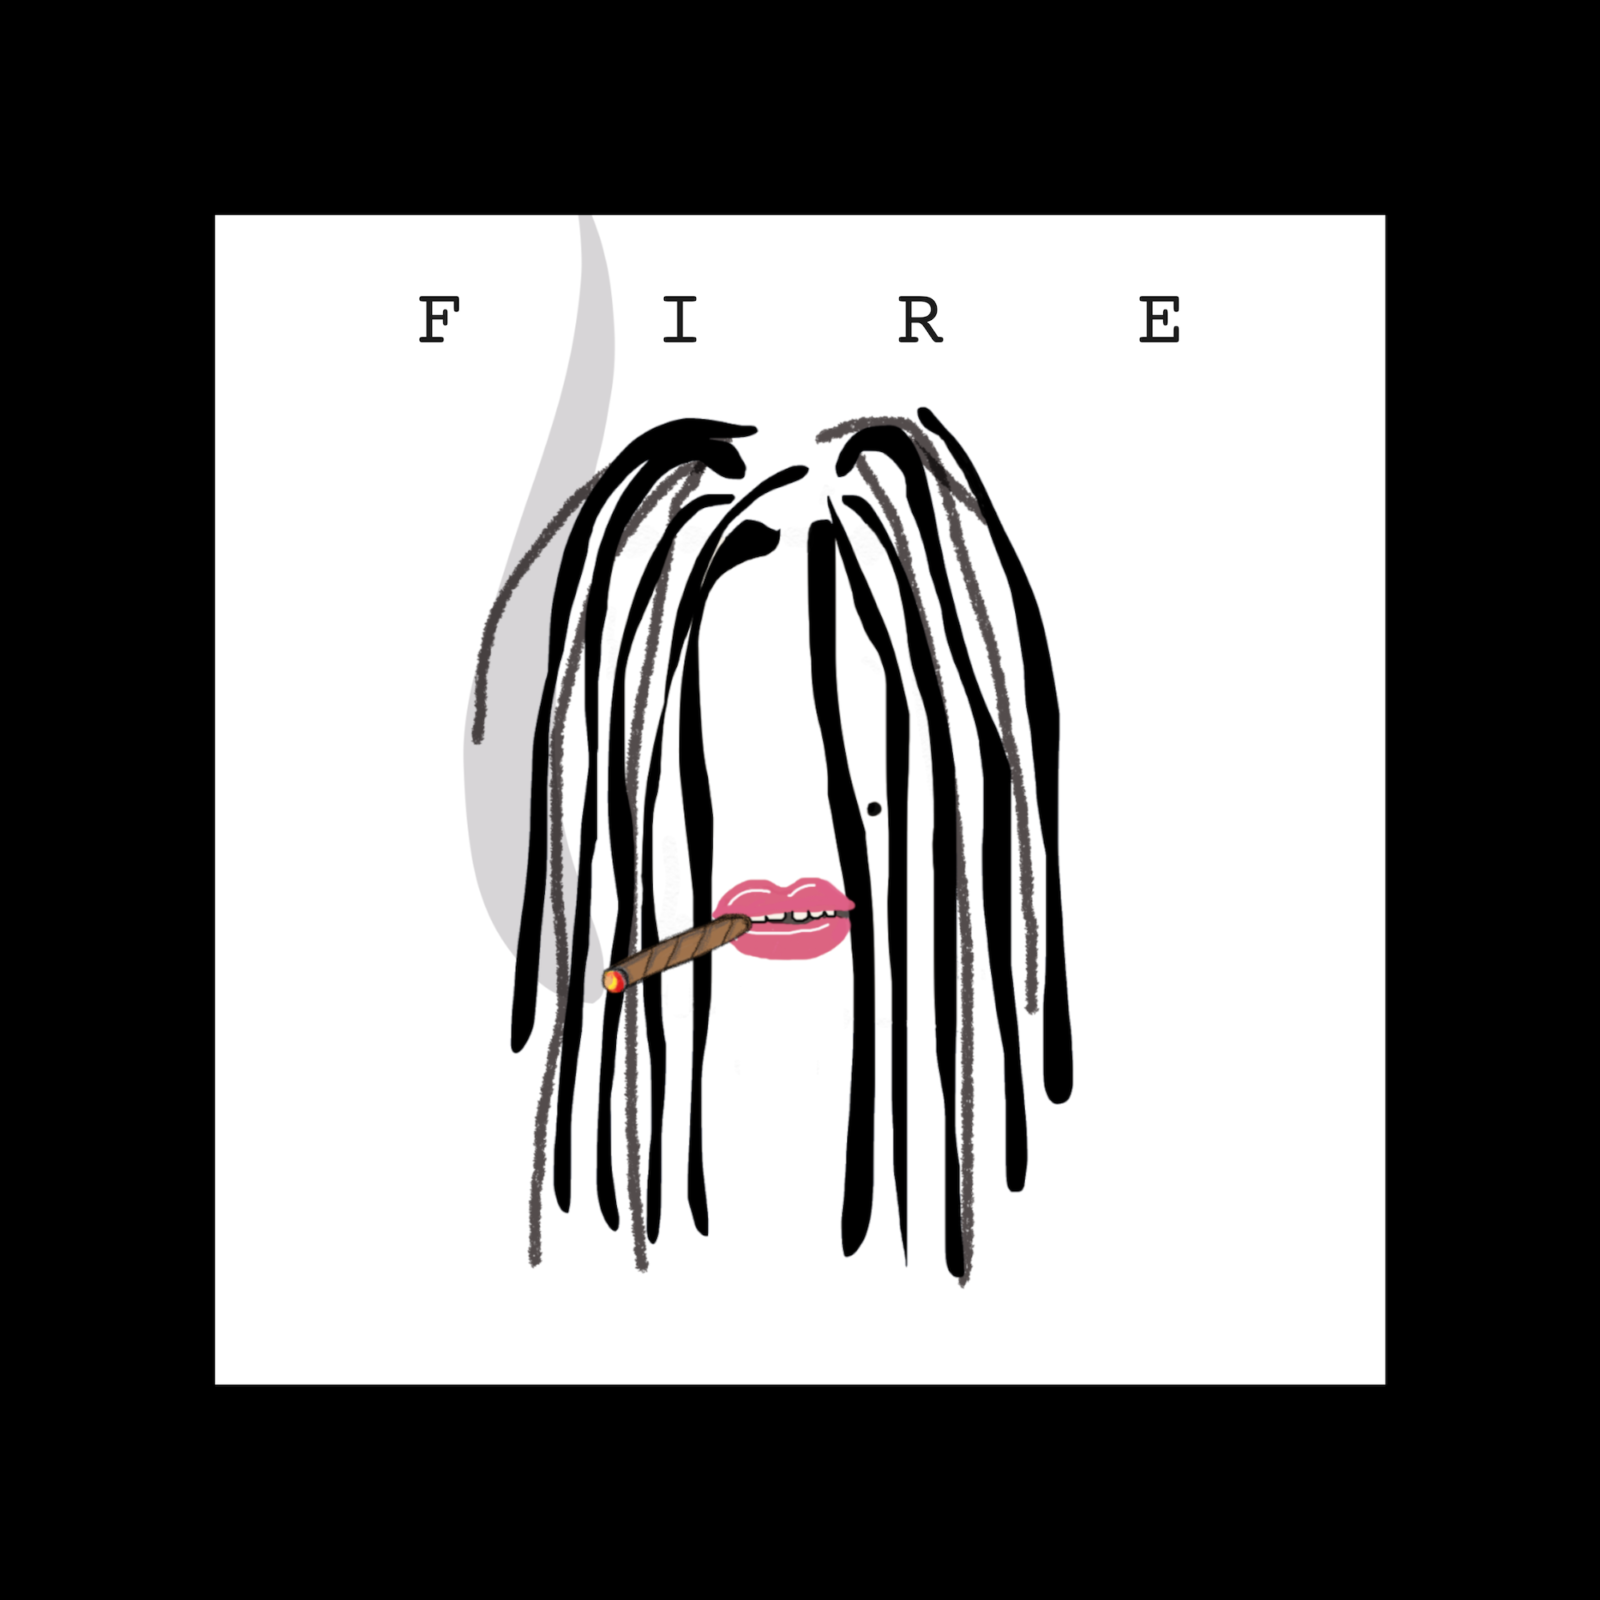 2017年、EMI MARIA始動！新曲「FIRE/ Breathe Again」を2曲同時リリースサムネイル画像!